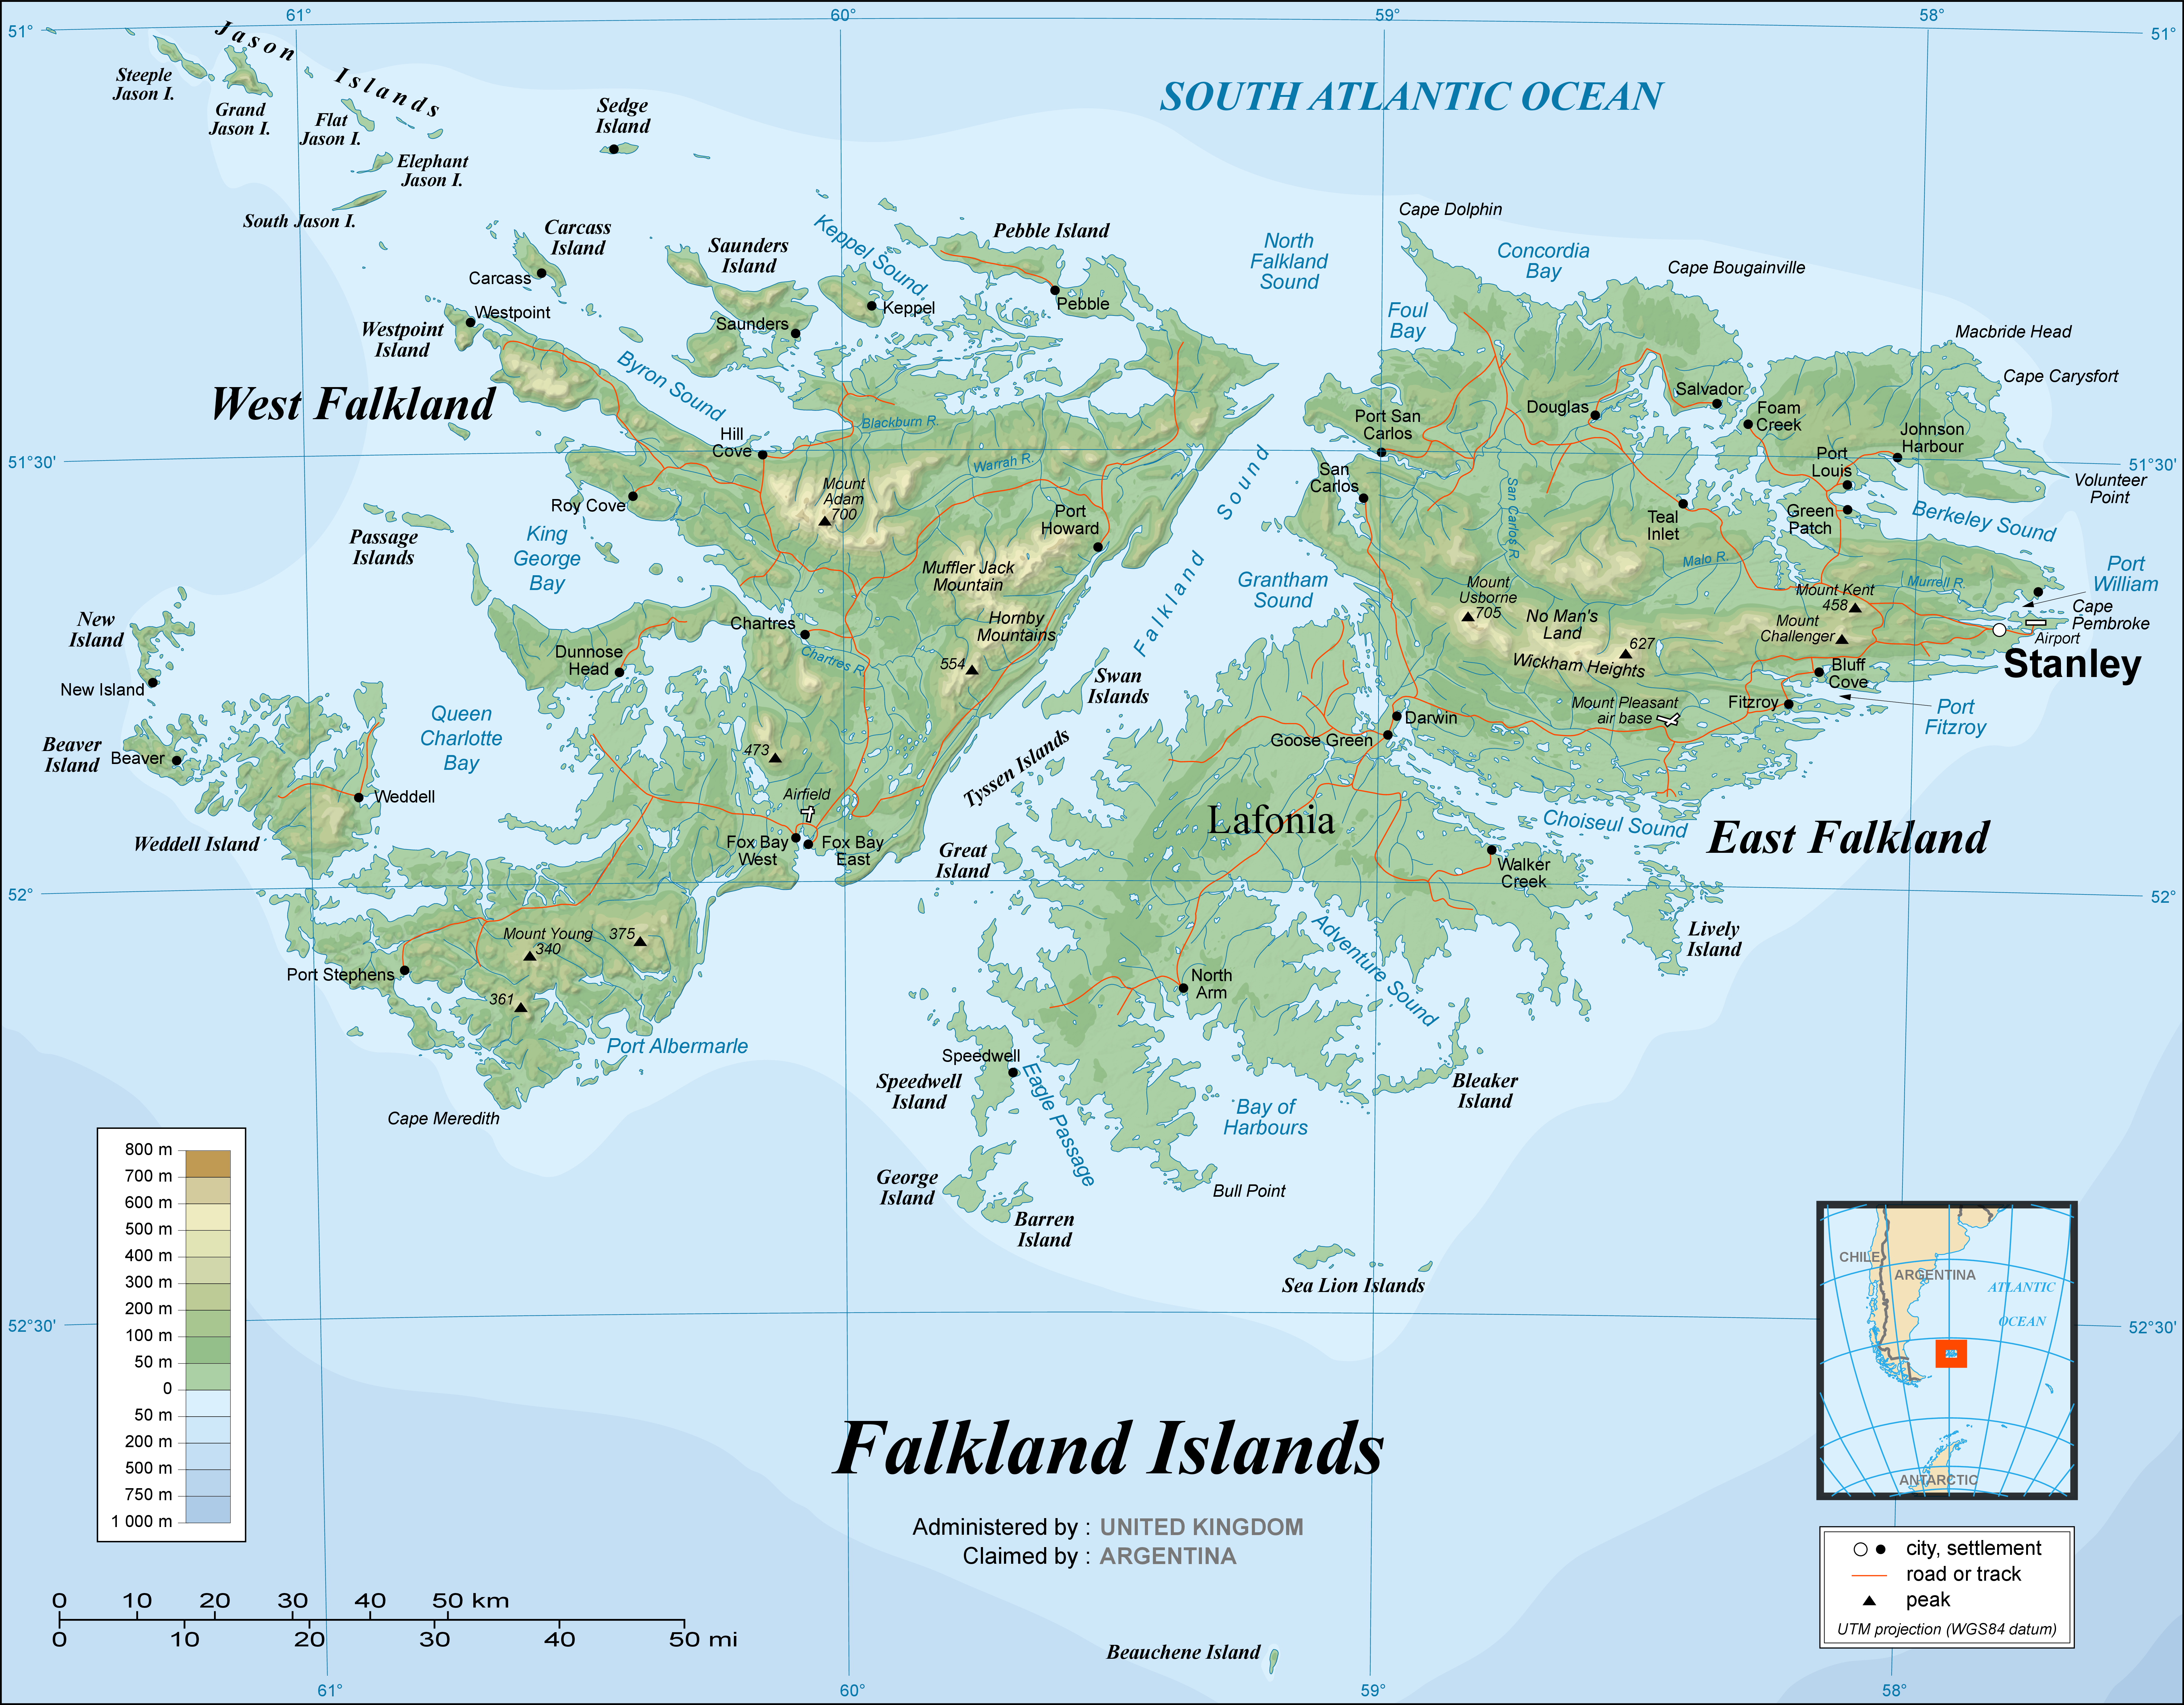 Falkland_Islands_topographic_map-en copy